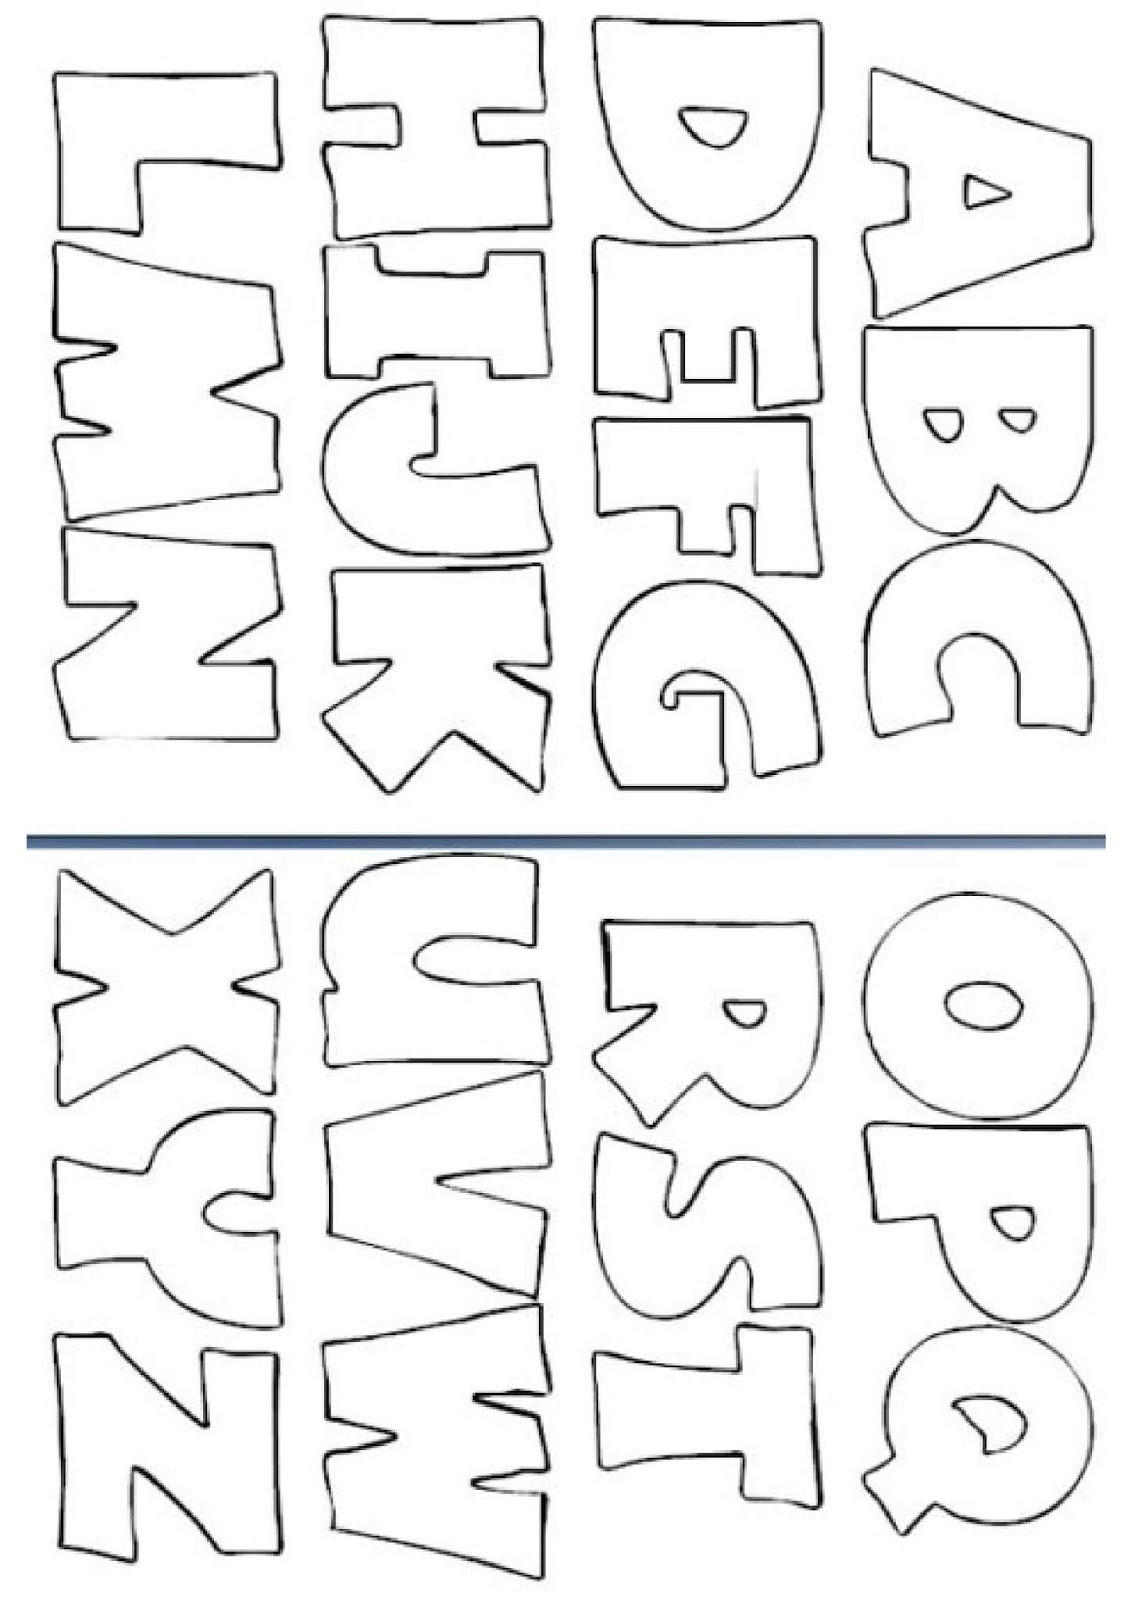 Abc Letras Do Alfabeto Para Imprimir Moldes Do Alfabeto Lindos Images